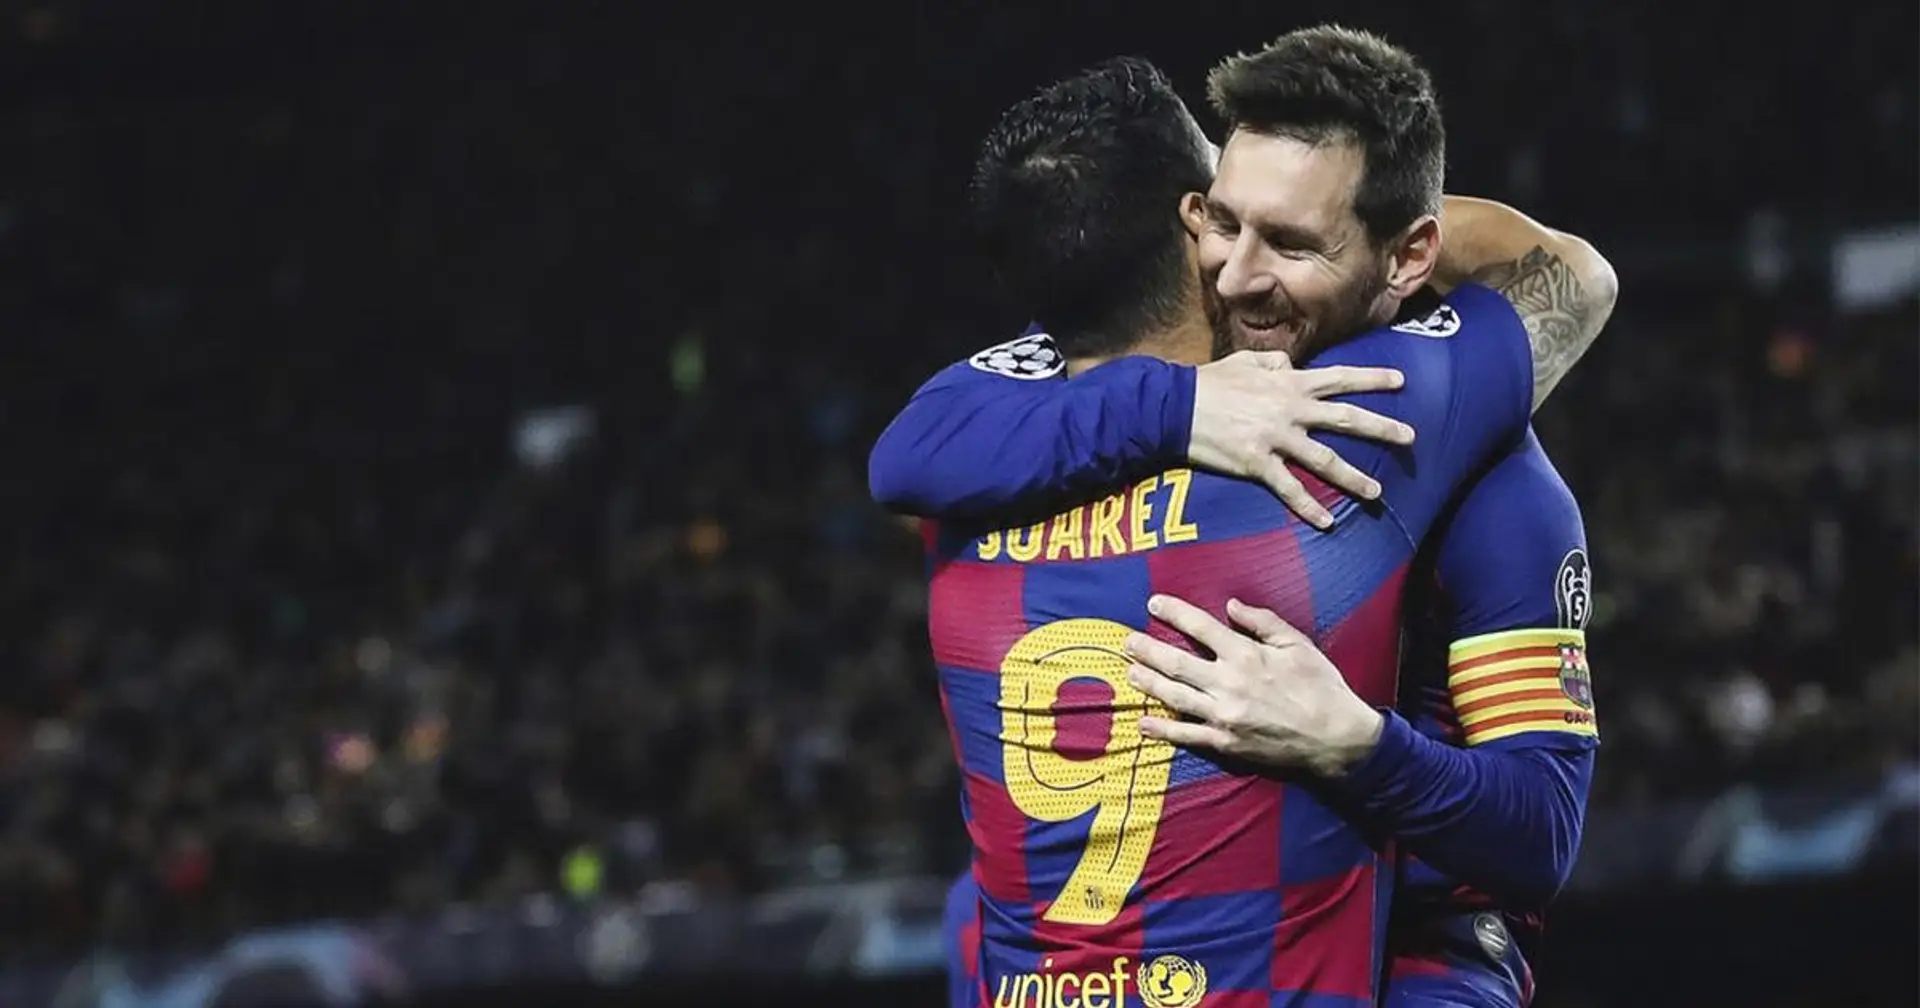 Meilleur Duo de l'histoire du football: Suarez-Messi en tête de la liste des duos les plus prolifiques en Europe